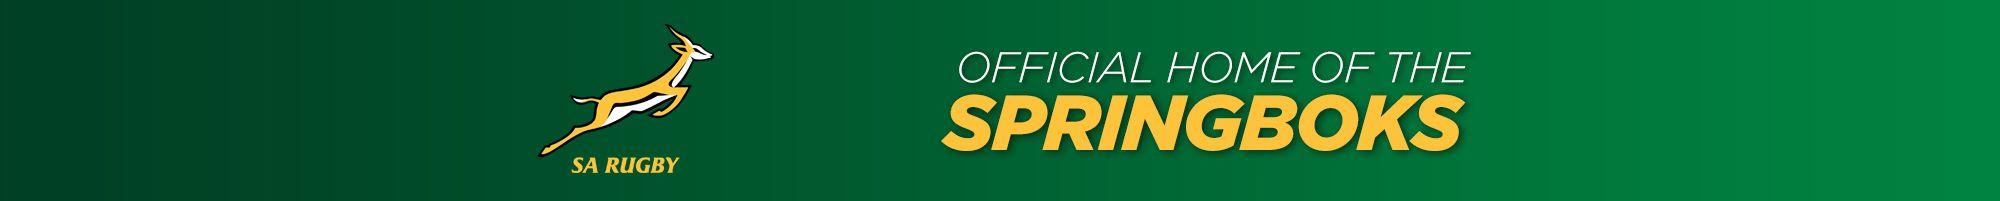 Springboks Logo - SA Rugby Home of the Springboks